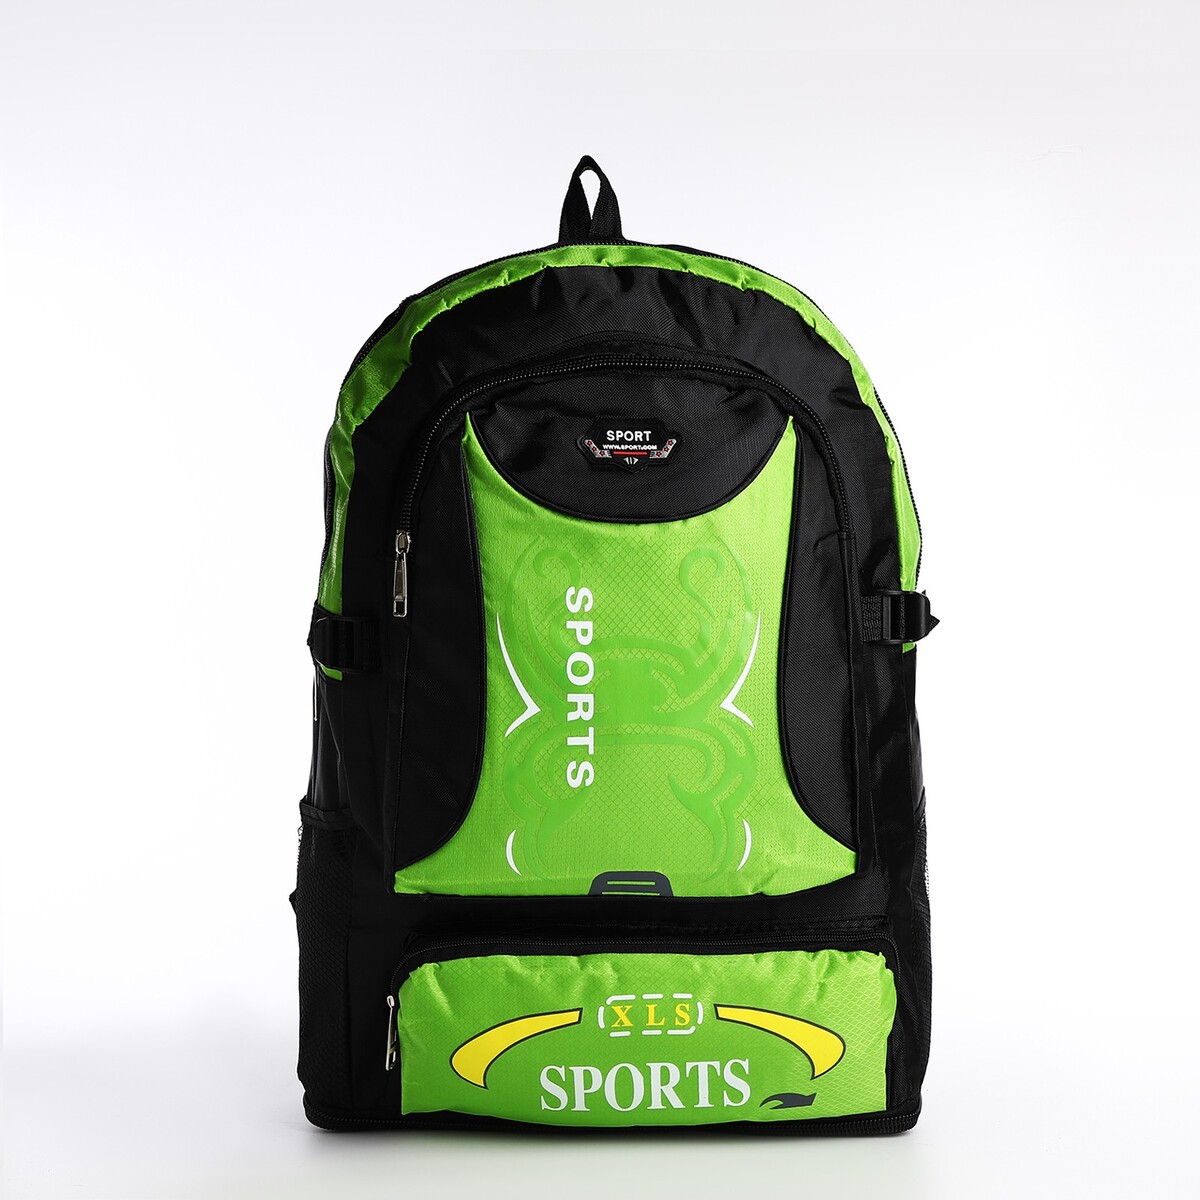 Рюкзак на молнии с увеличением, 55л, 5 наружных карманов, цвет зеленый